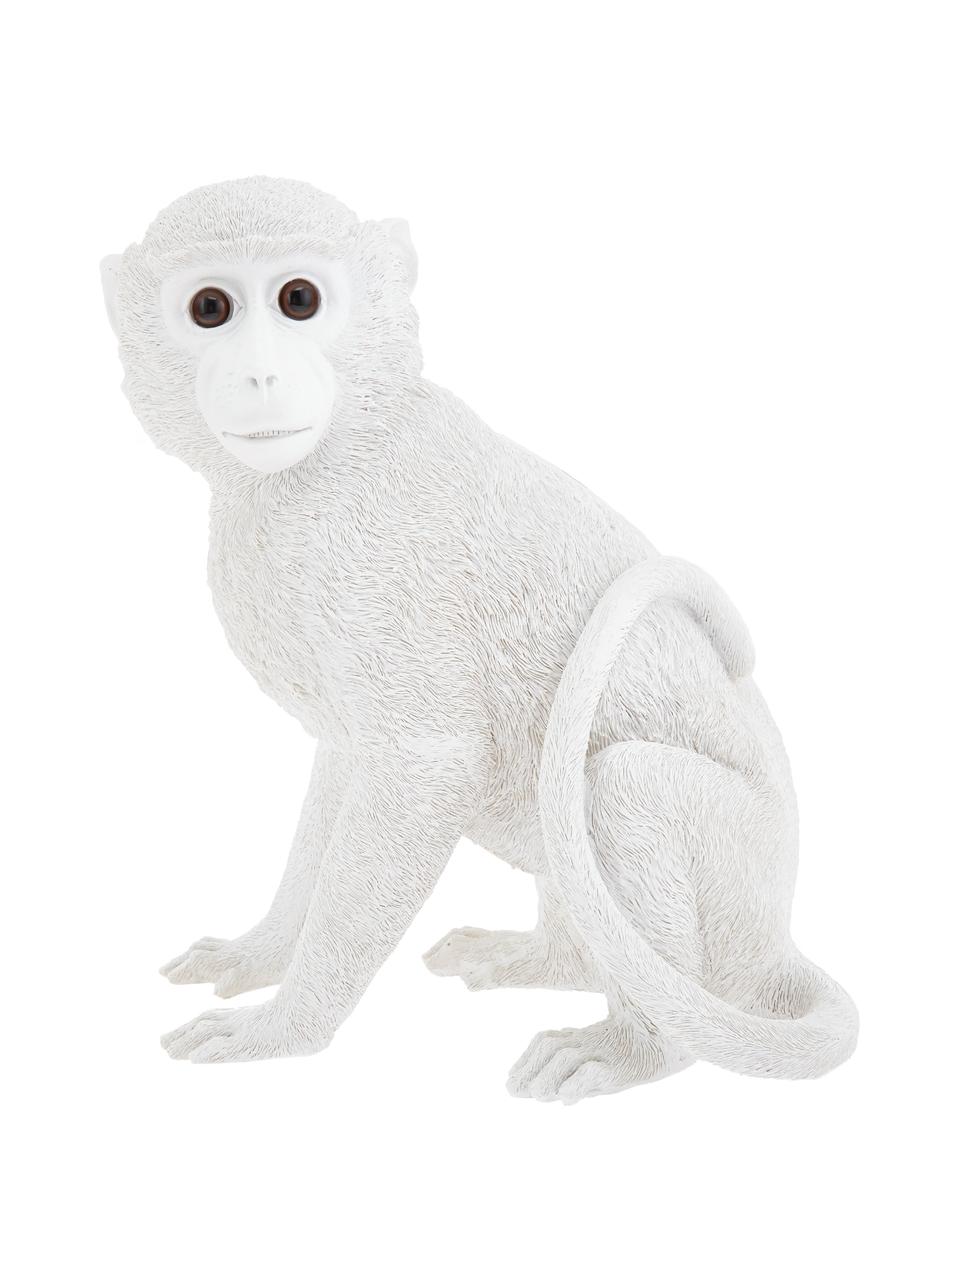 Spardose Monkey, Kunstharz, Weiss, 25 x 30 cm